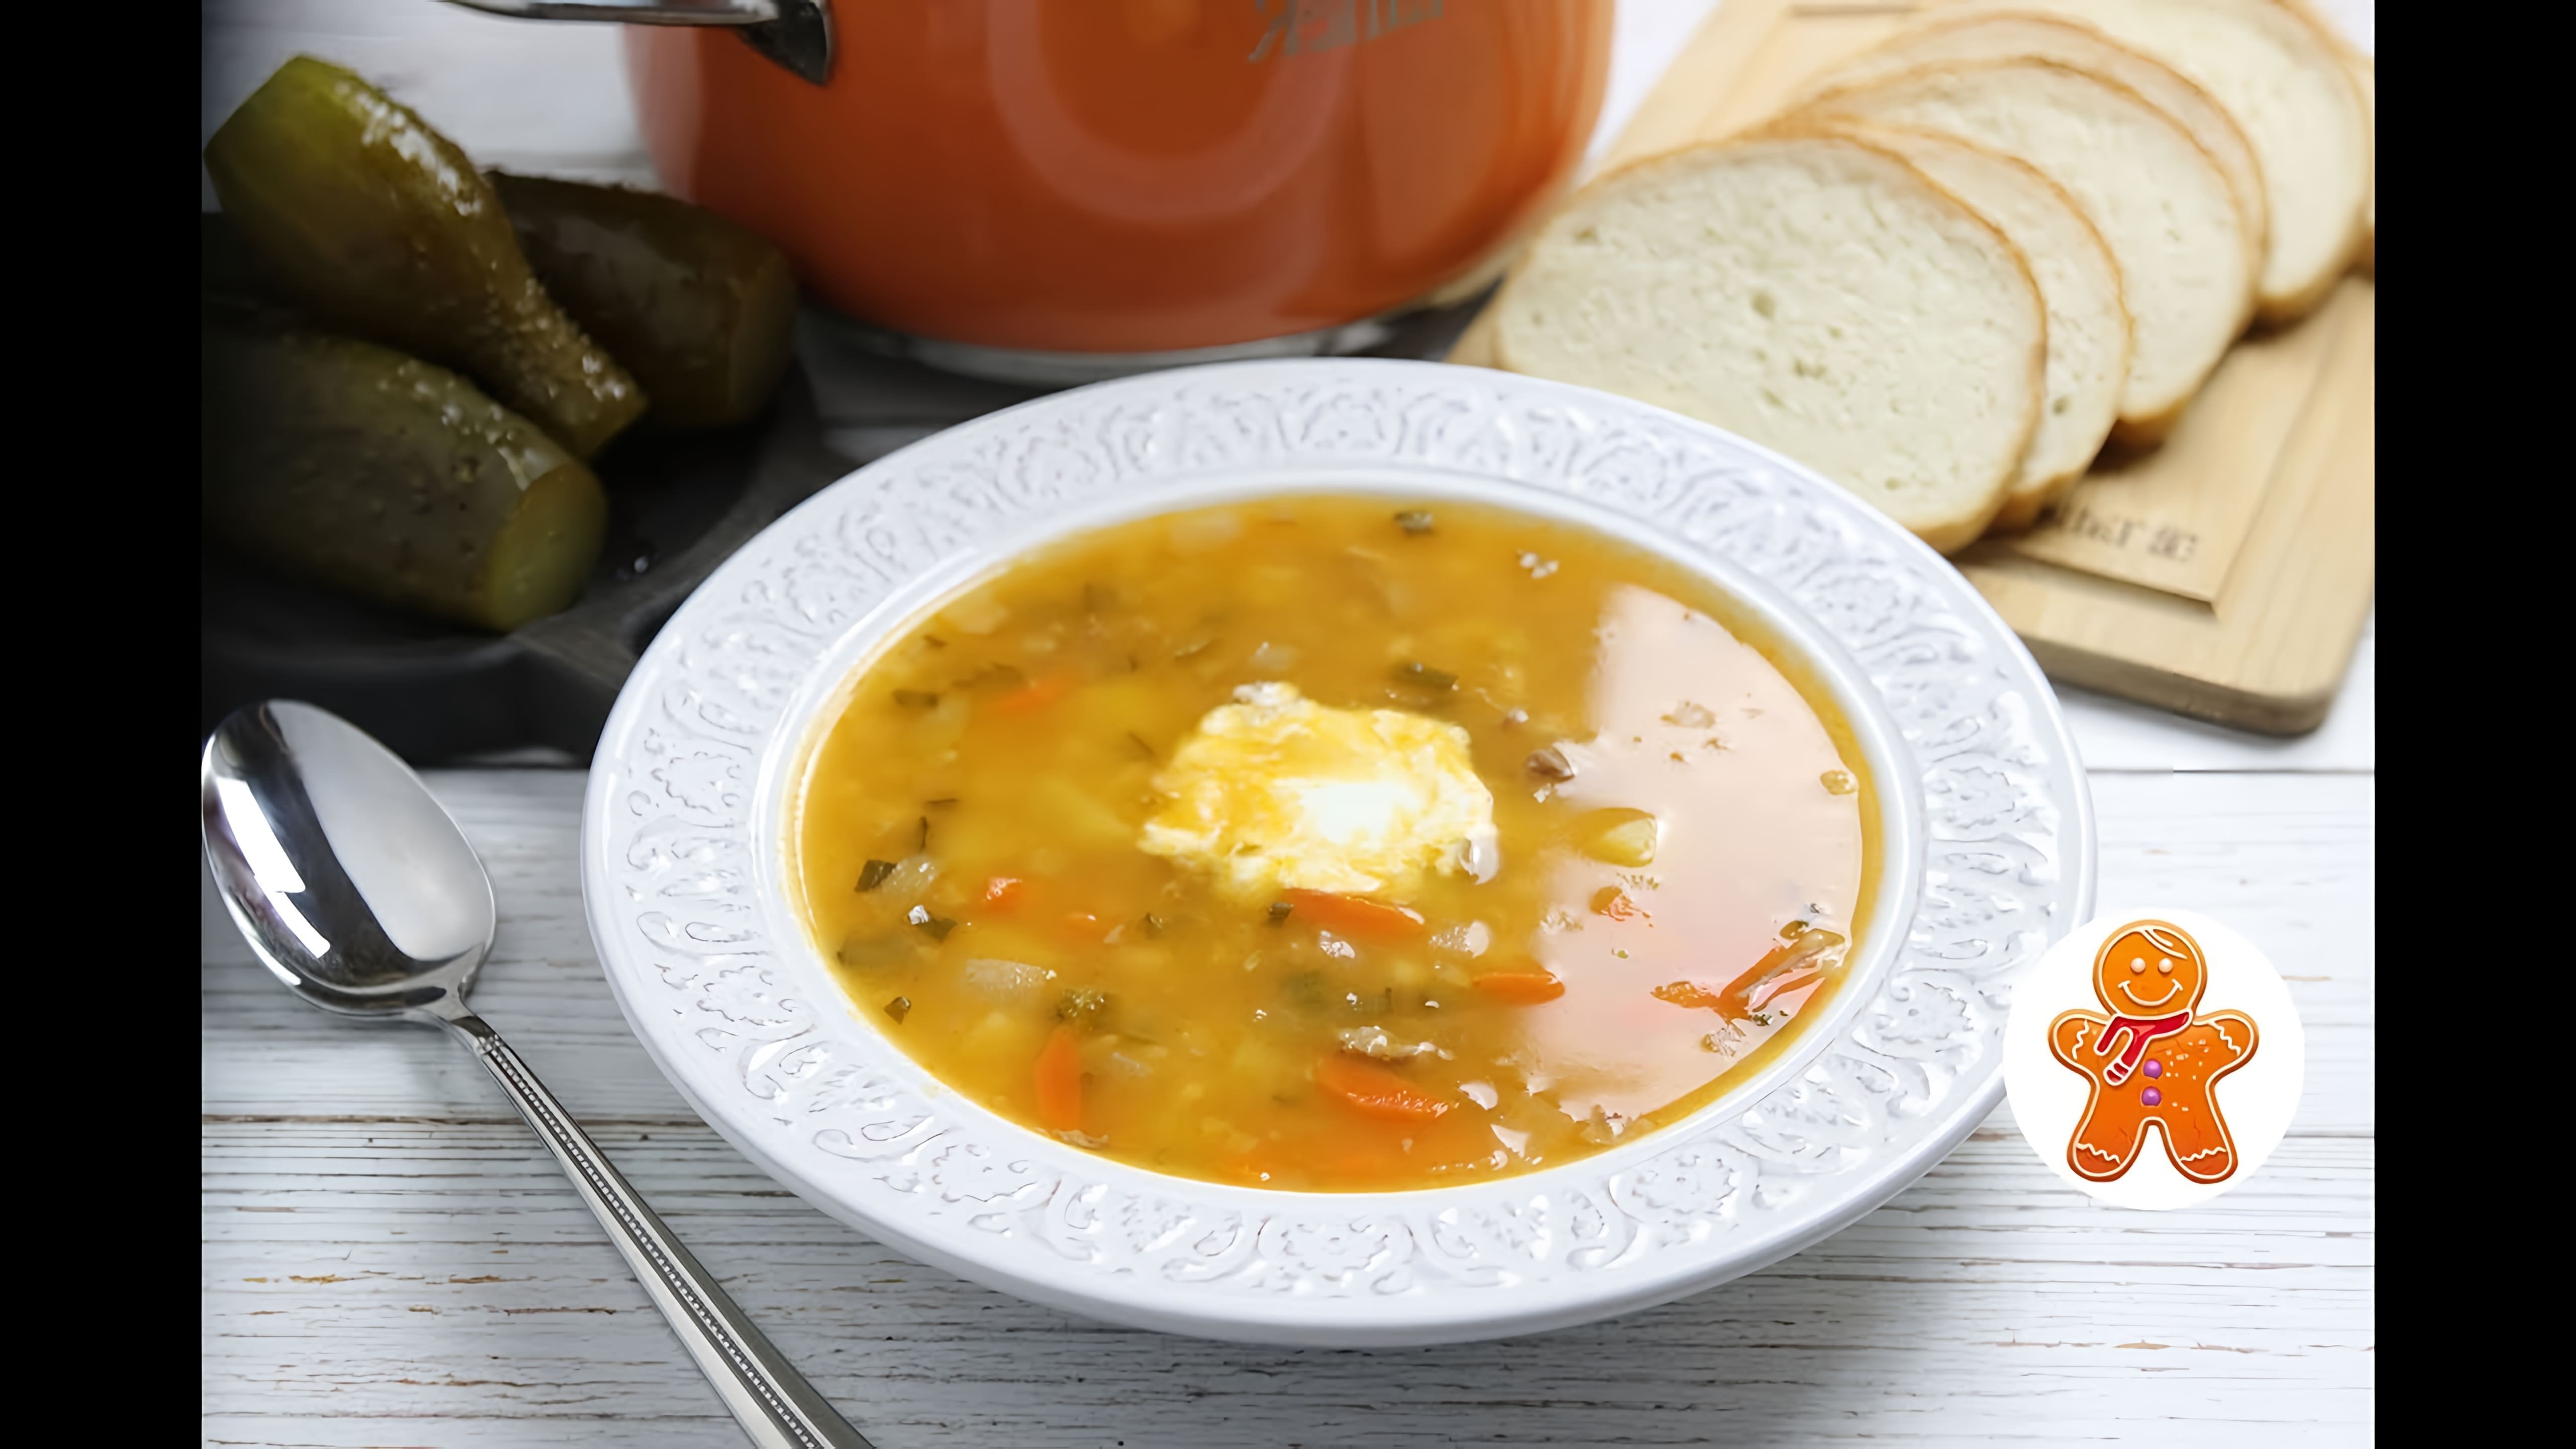 Видео как приготовить ленинградский суп, популярное блюдо советской эпохи, которое было в меню ресторанов и столовых